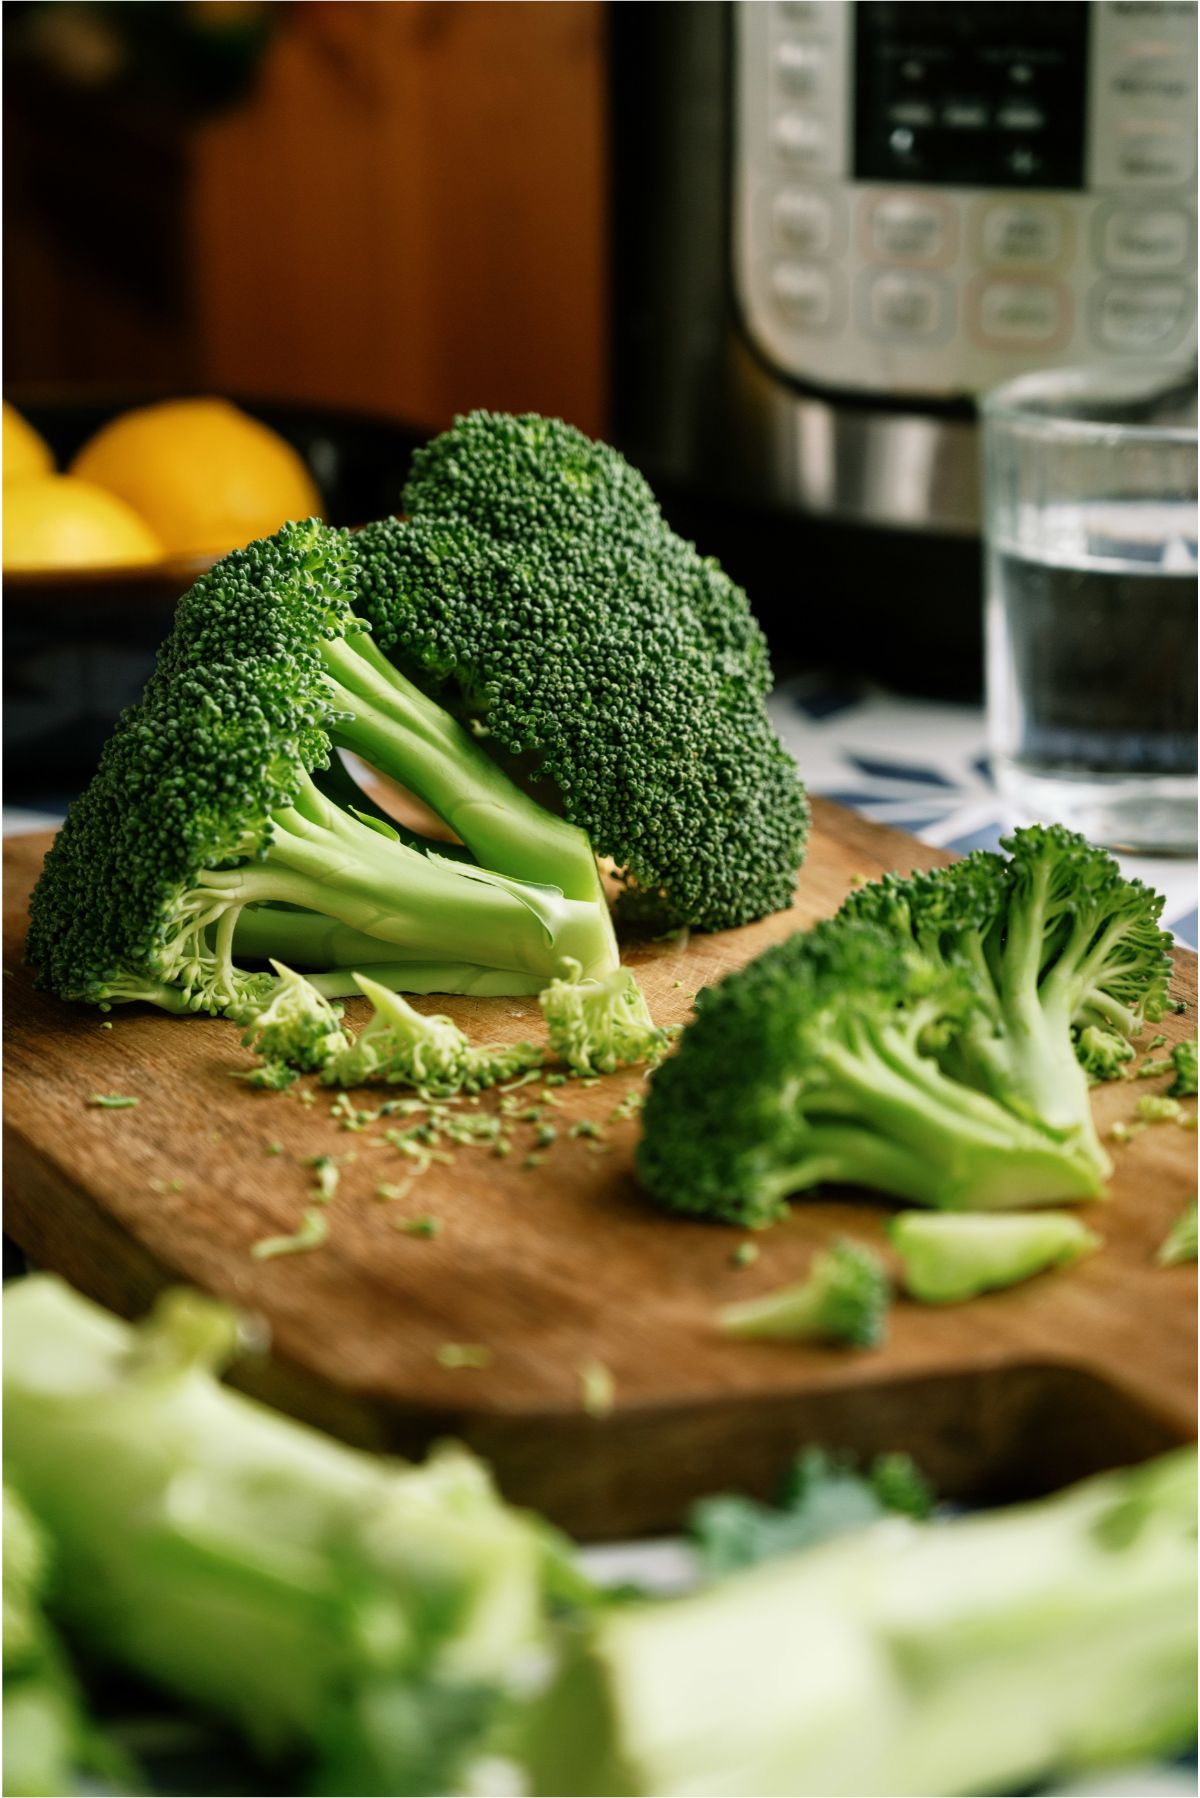 Broccoli heads on a cutting board